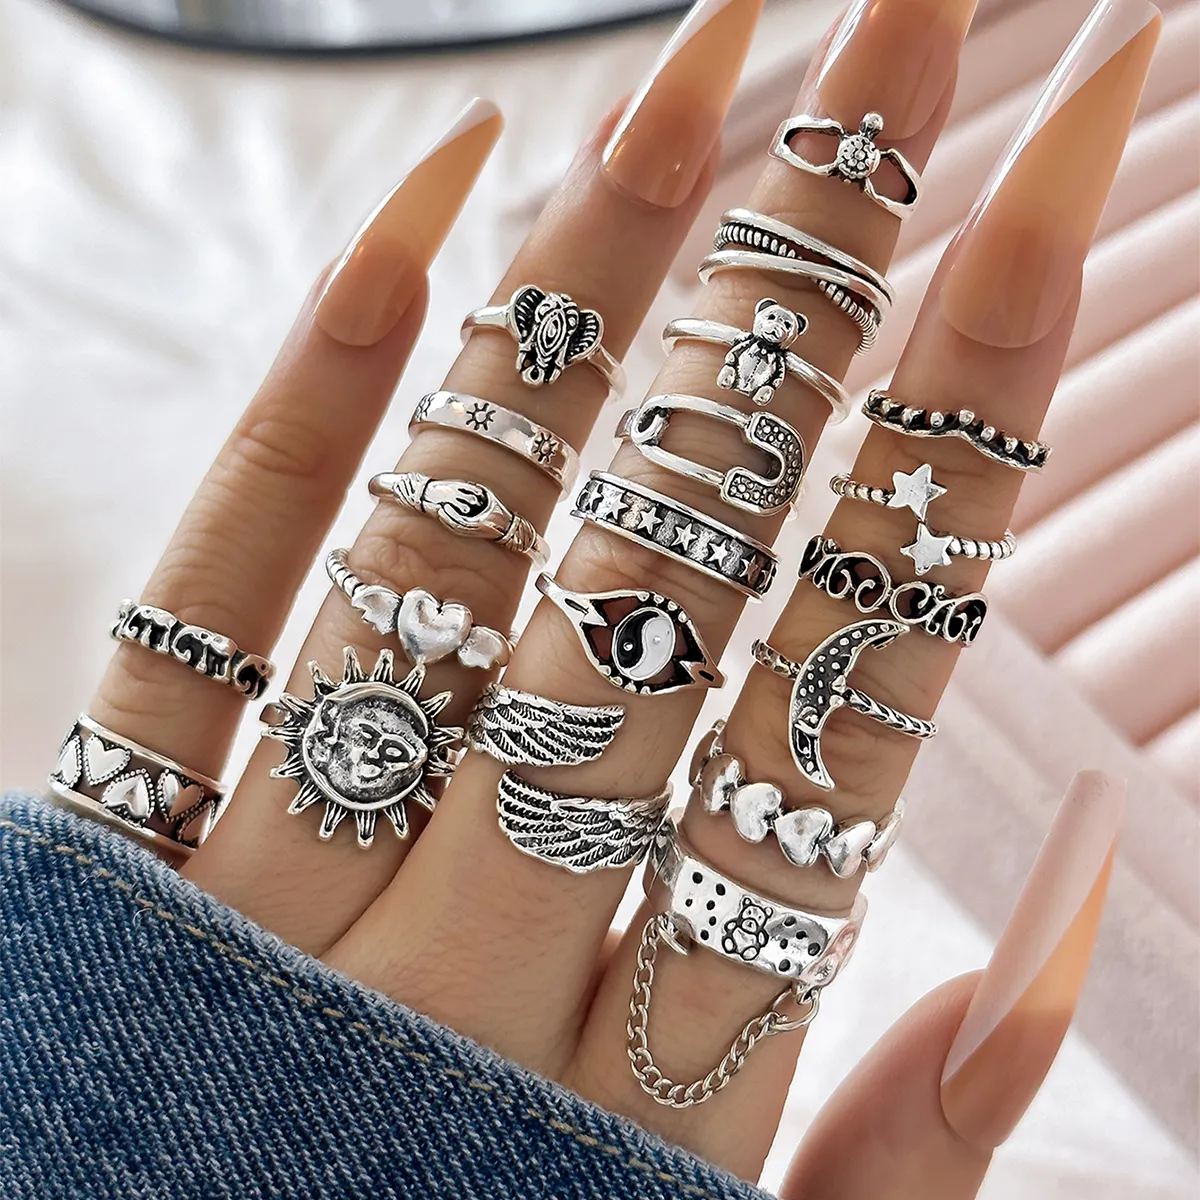 Sindlan Juego de 20 piezas de anillos Juego de anillos de plata de compromiso para mujeres y hombres